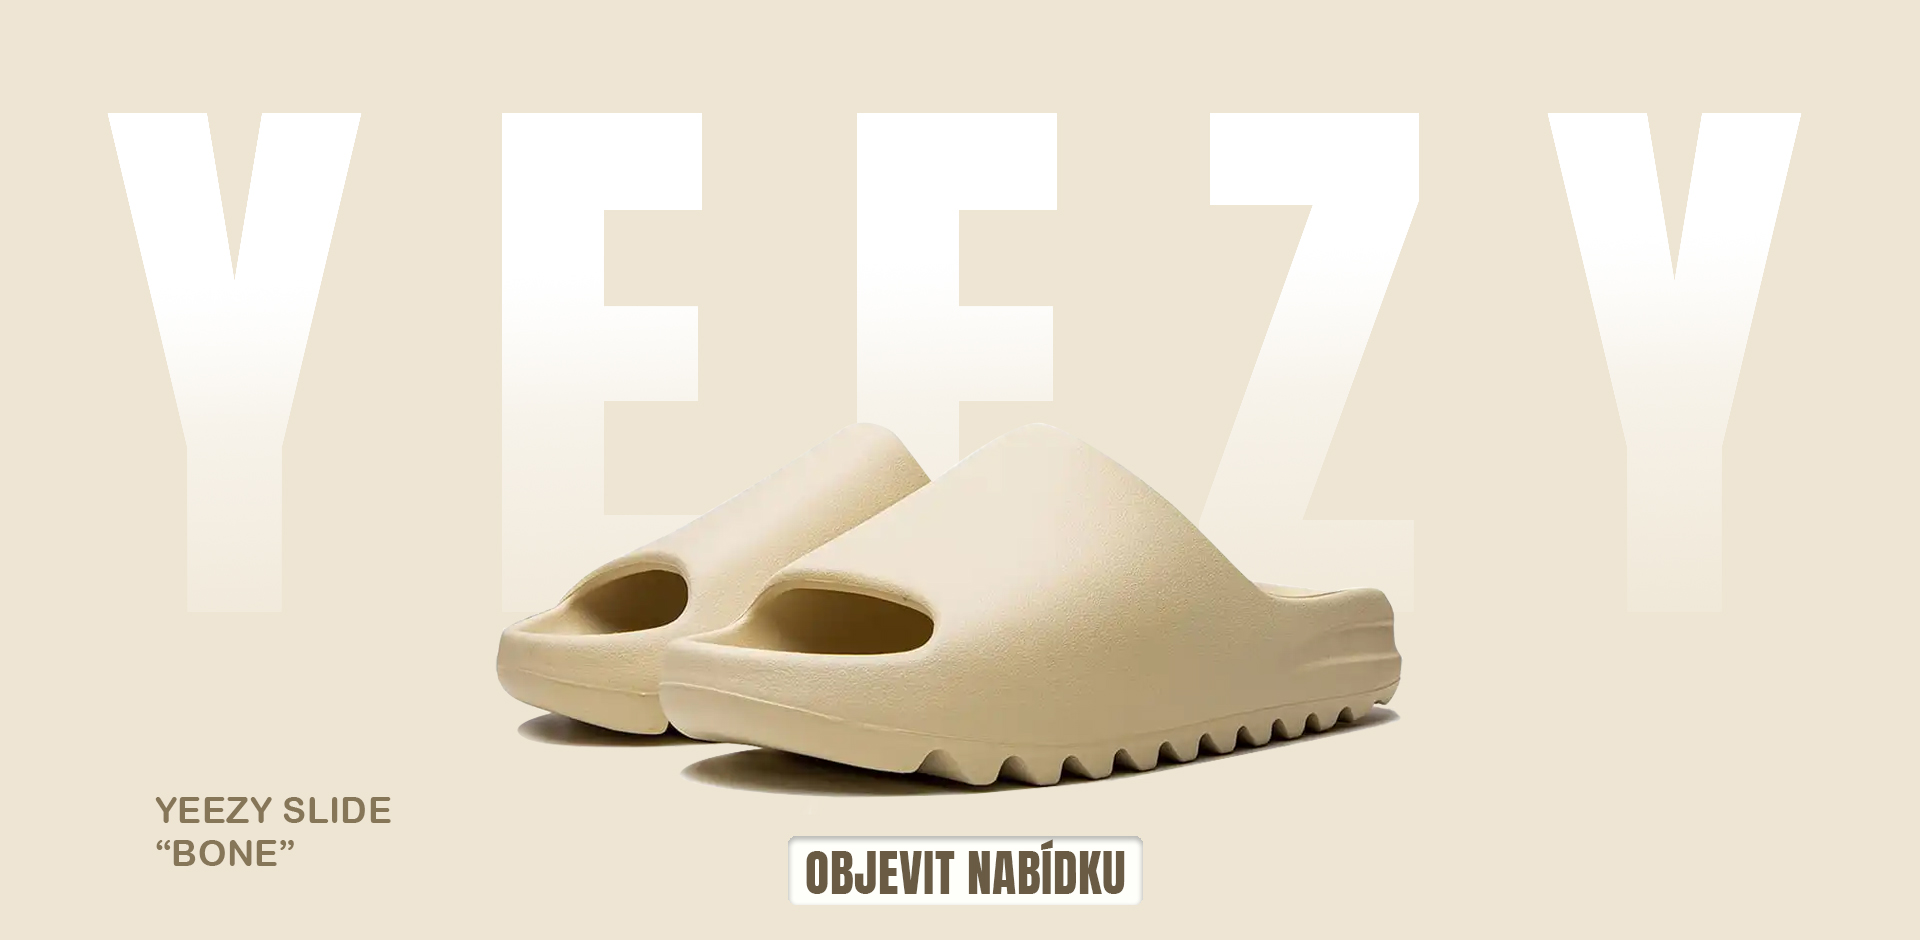 Objevte Yeezy Slide pantofle - ikonický kousek od Adidas Yeezy, který spojuje módu s pohodlím. Ideální volba pro letní období, tyto dámské a pánské pantofle nabízejí elegantní design pro každodenní nošení. | Doprava zdarma